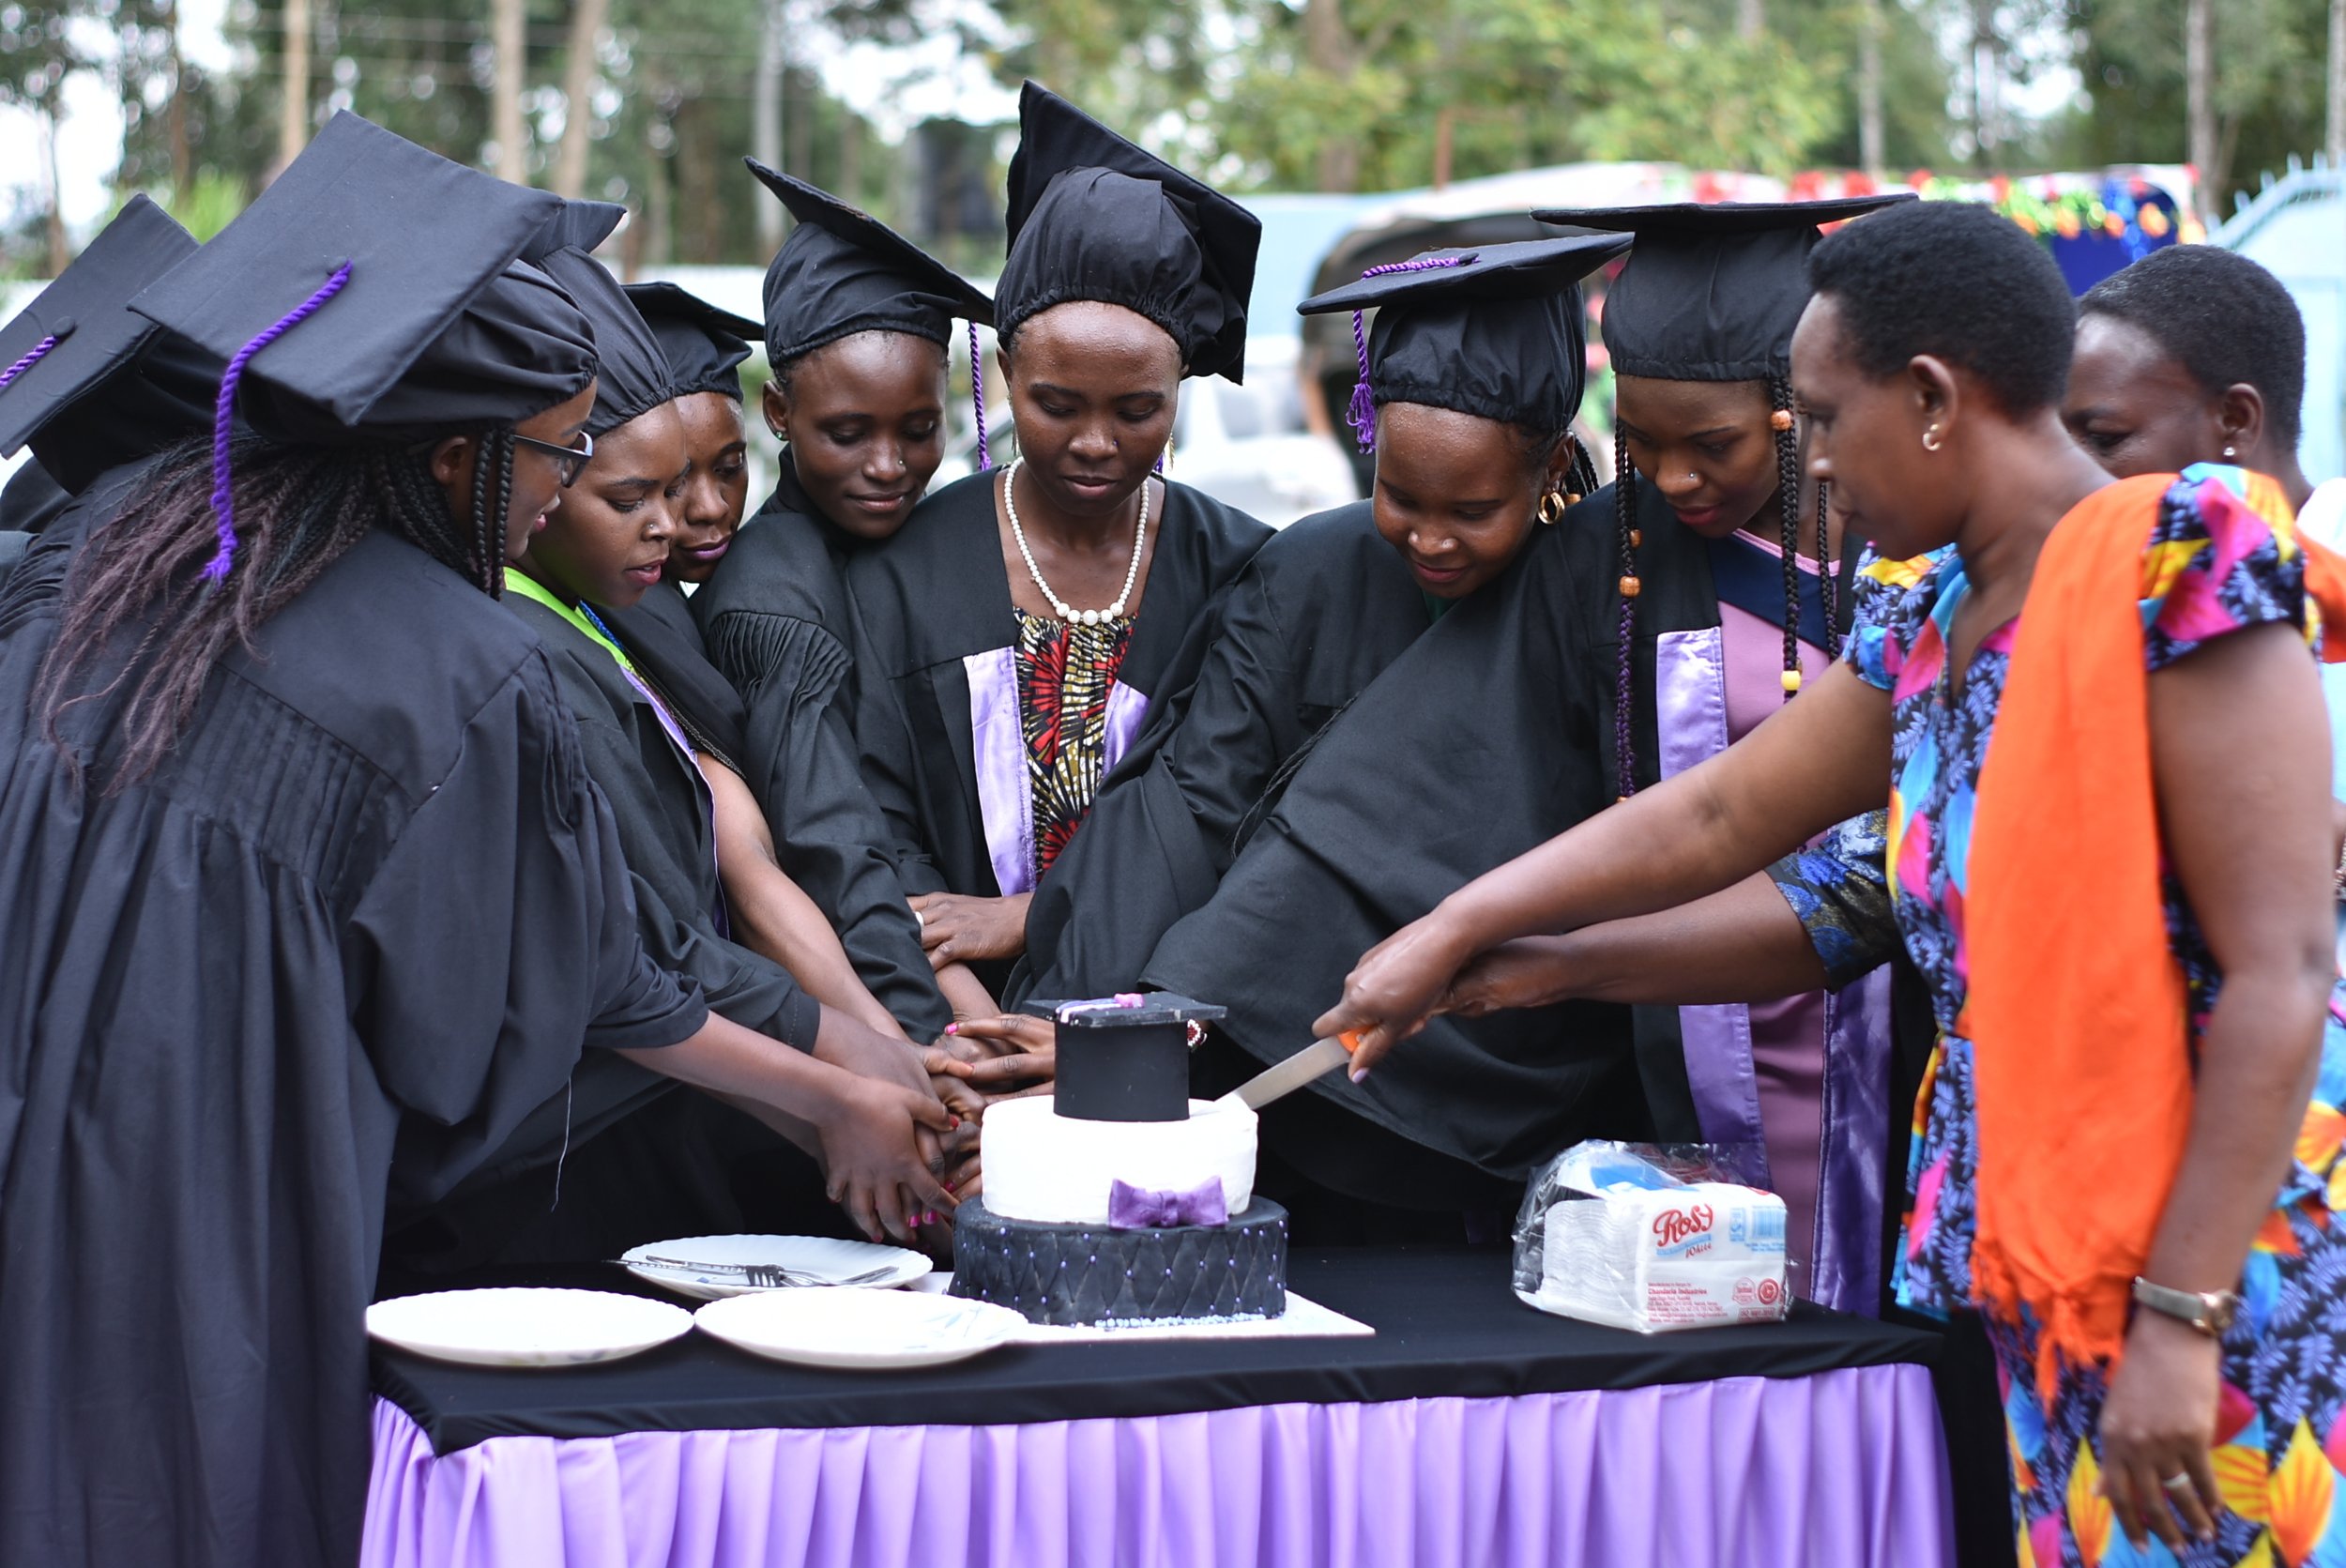 Graduates cut their cake